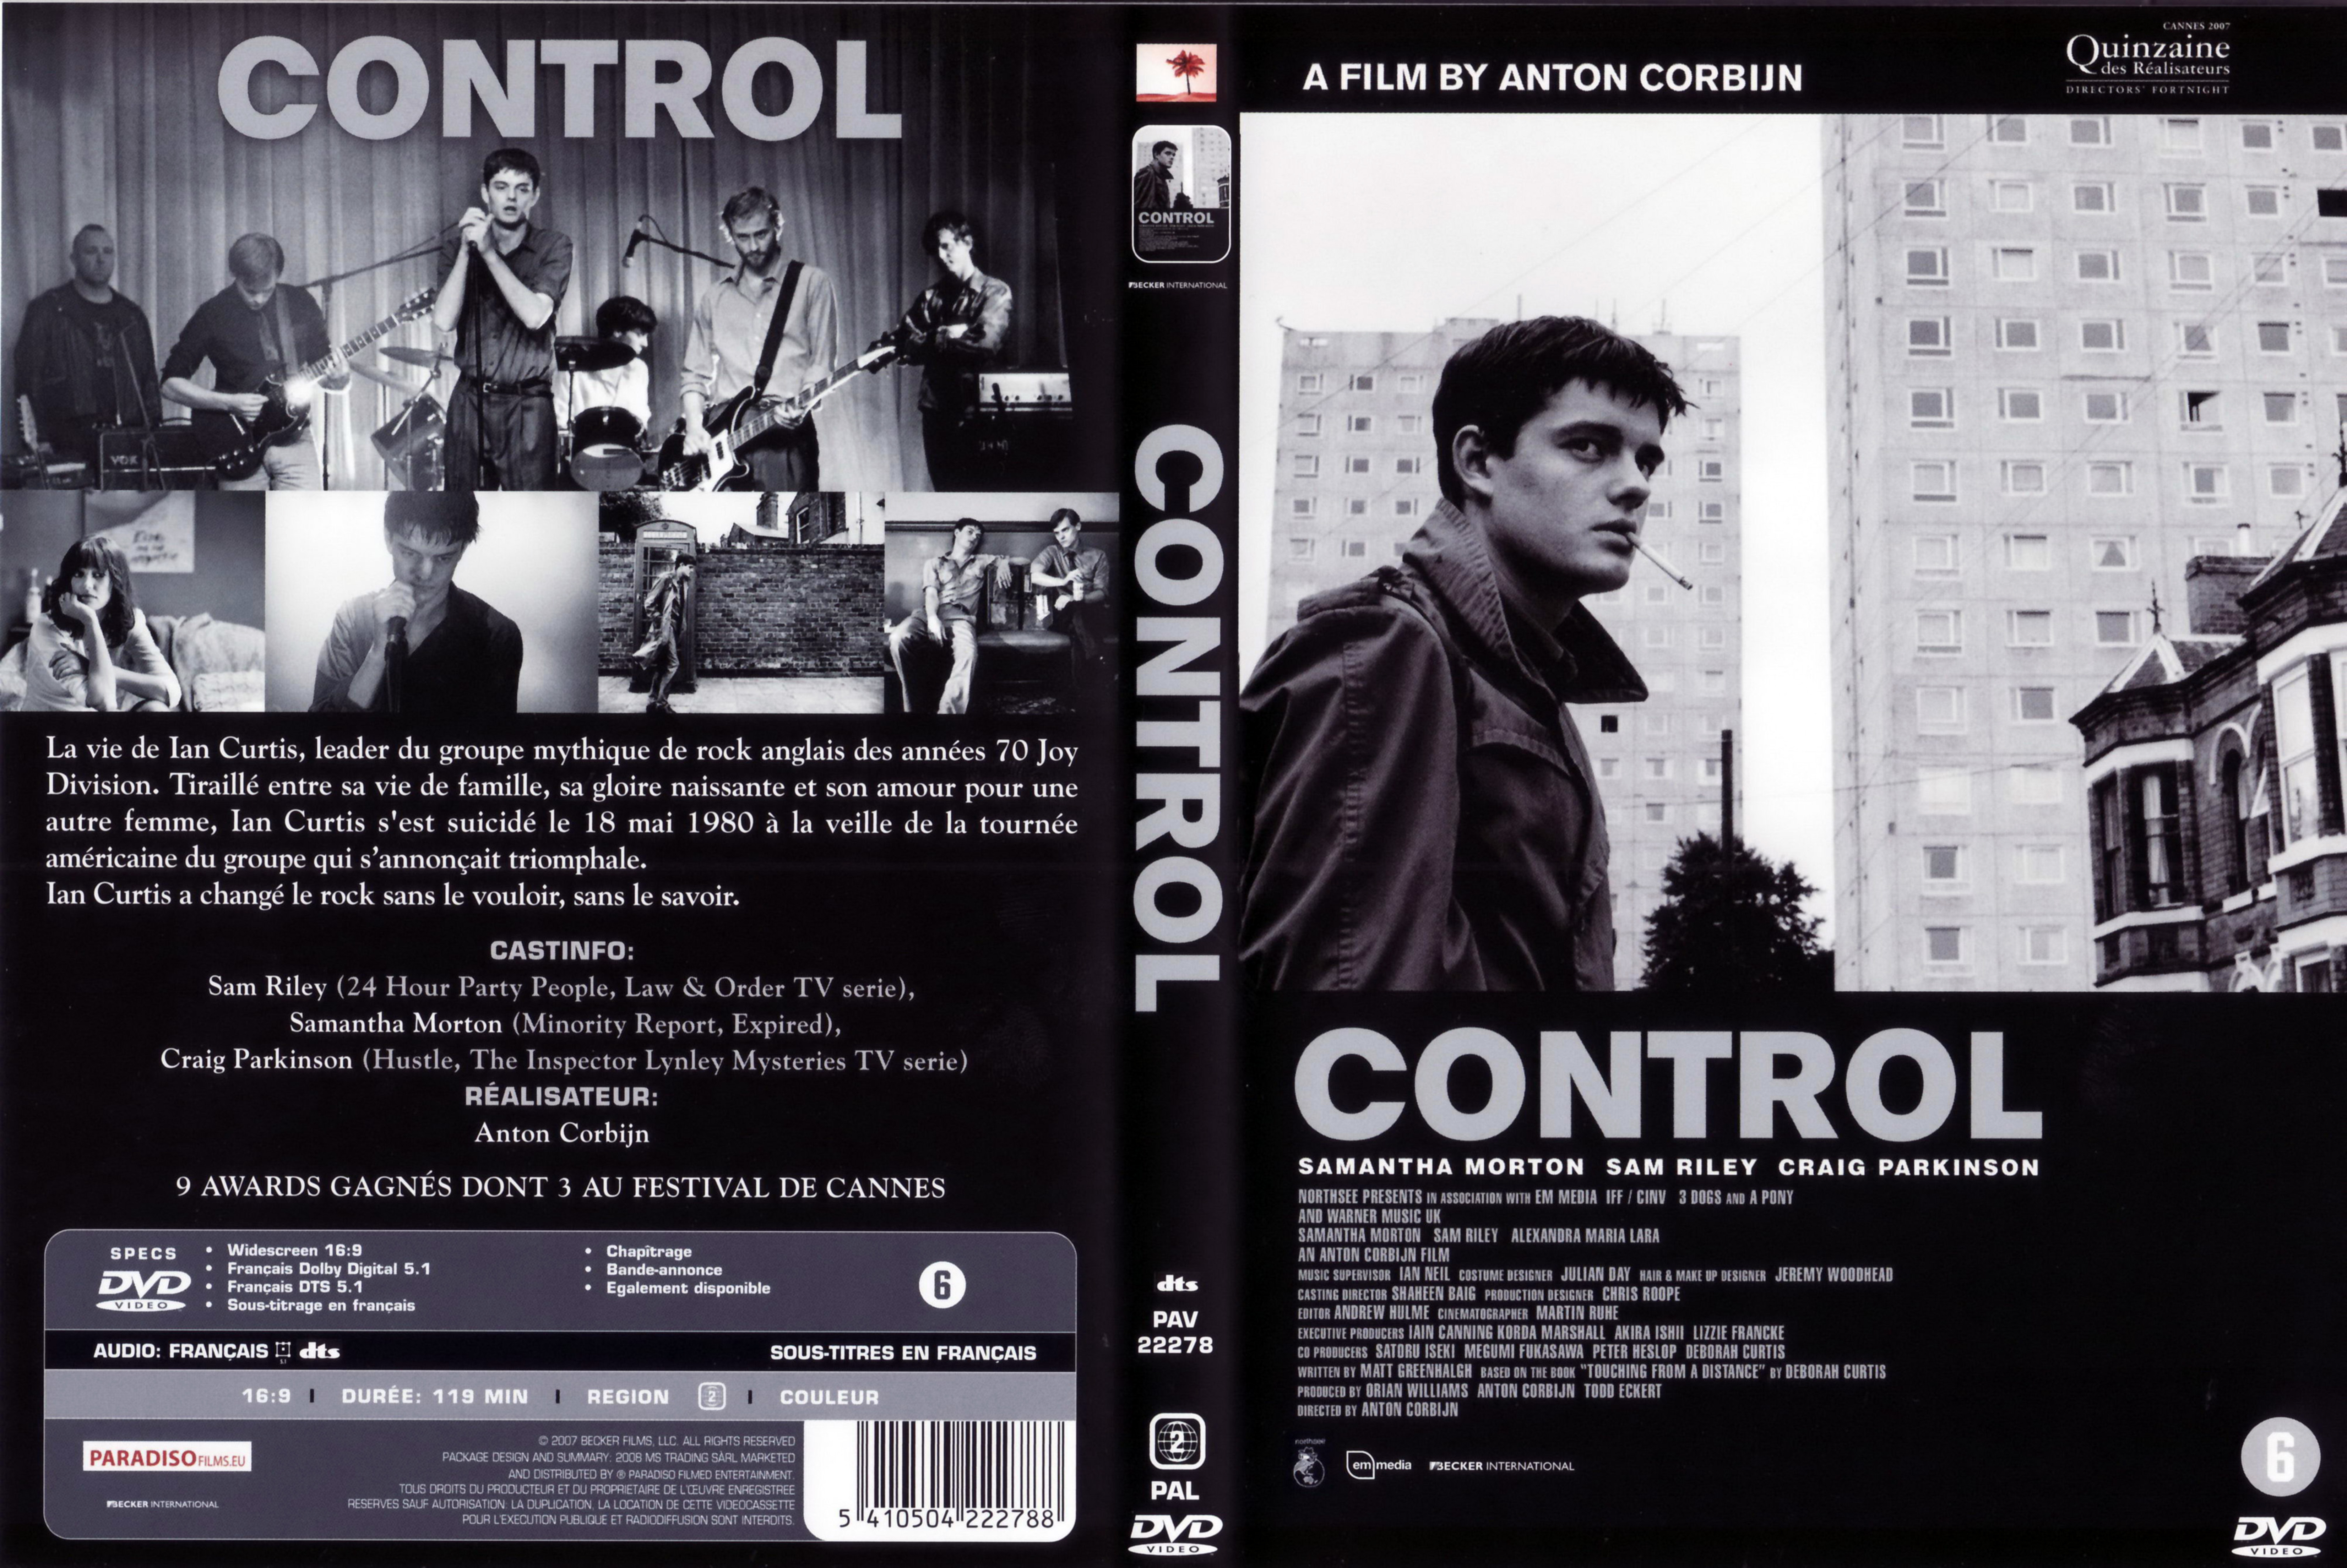 Jaquette DVD Control (2007) v2